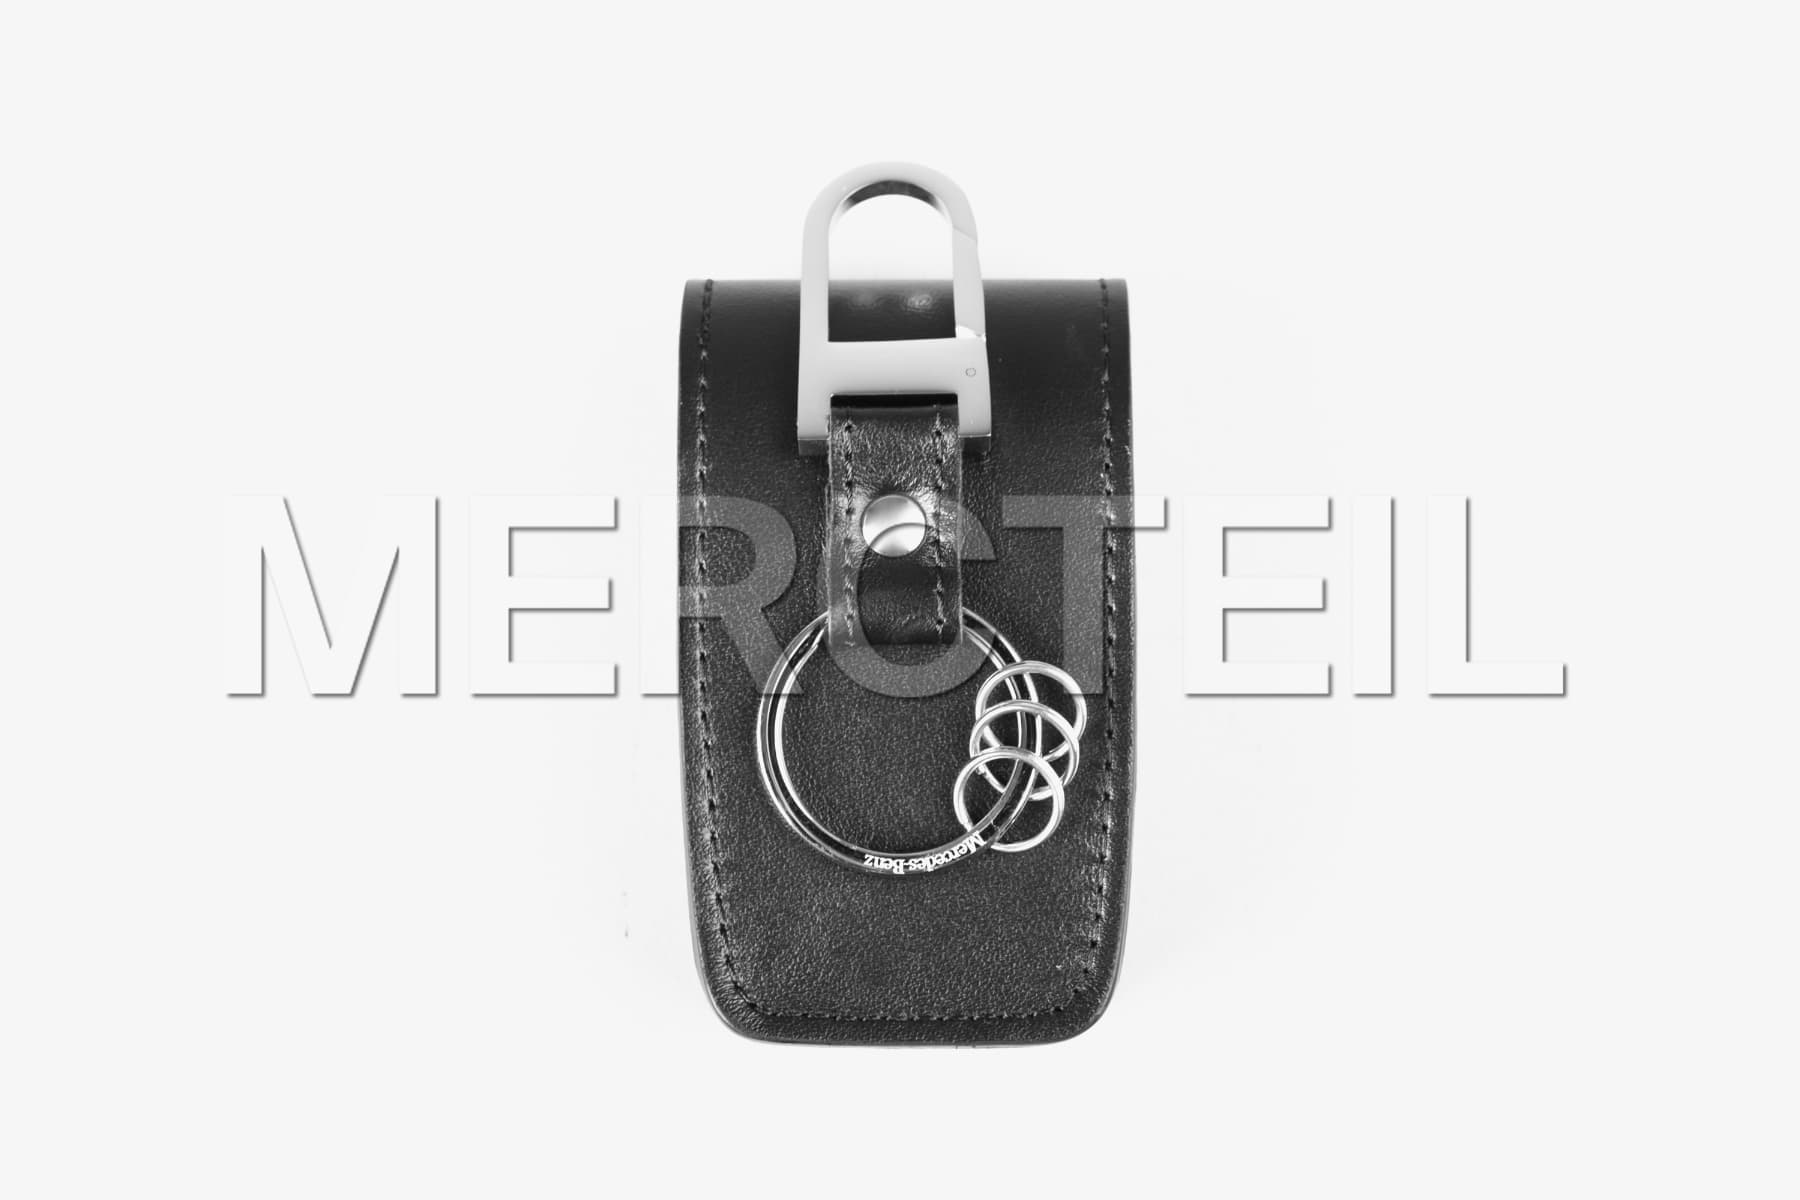 Schlüsseletui Leder Schwarz 8. Generation Original Mercedes-Benz Collection (Teilenummer: B66959108)